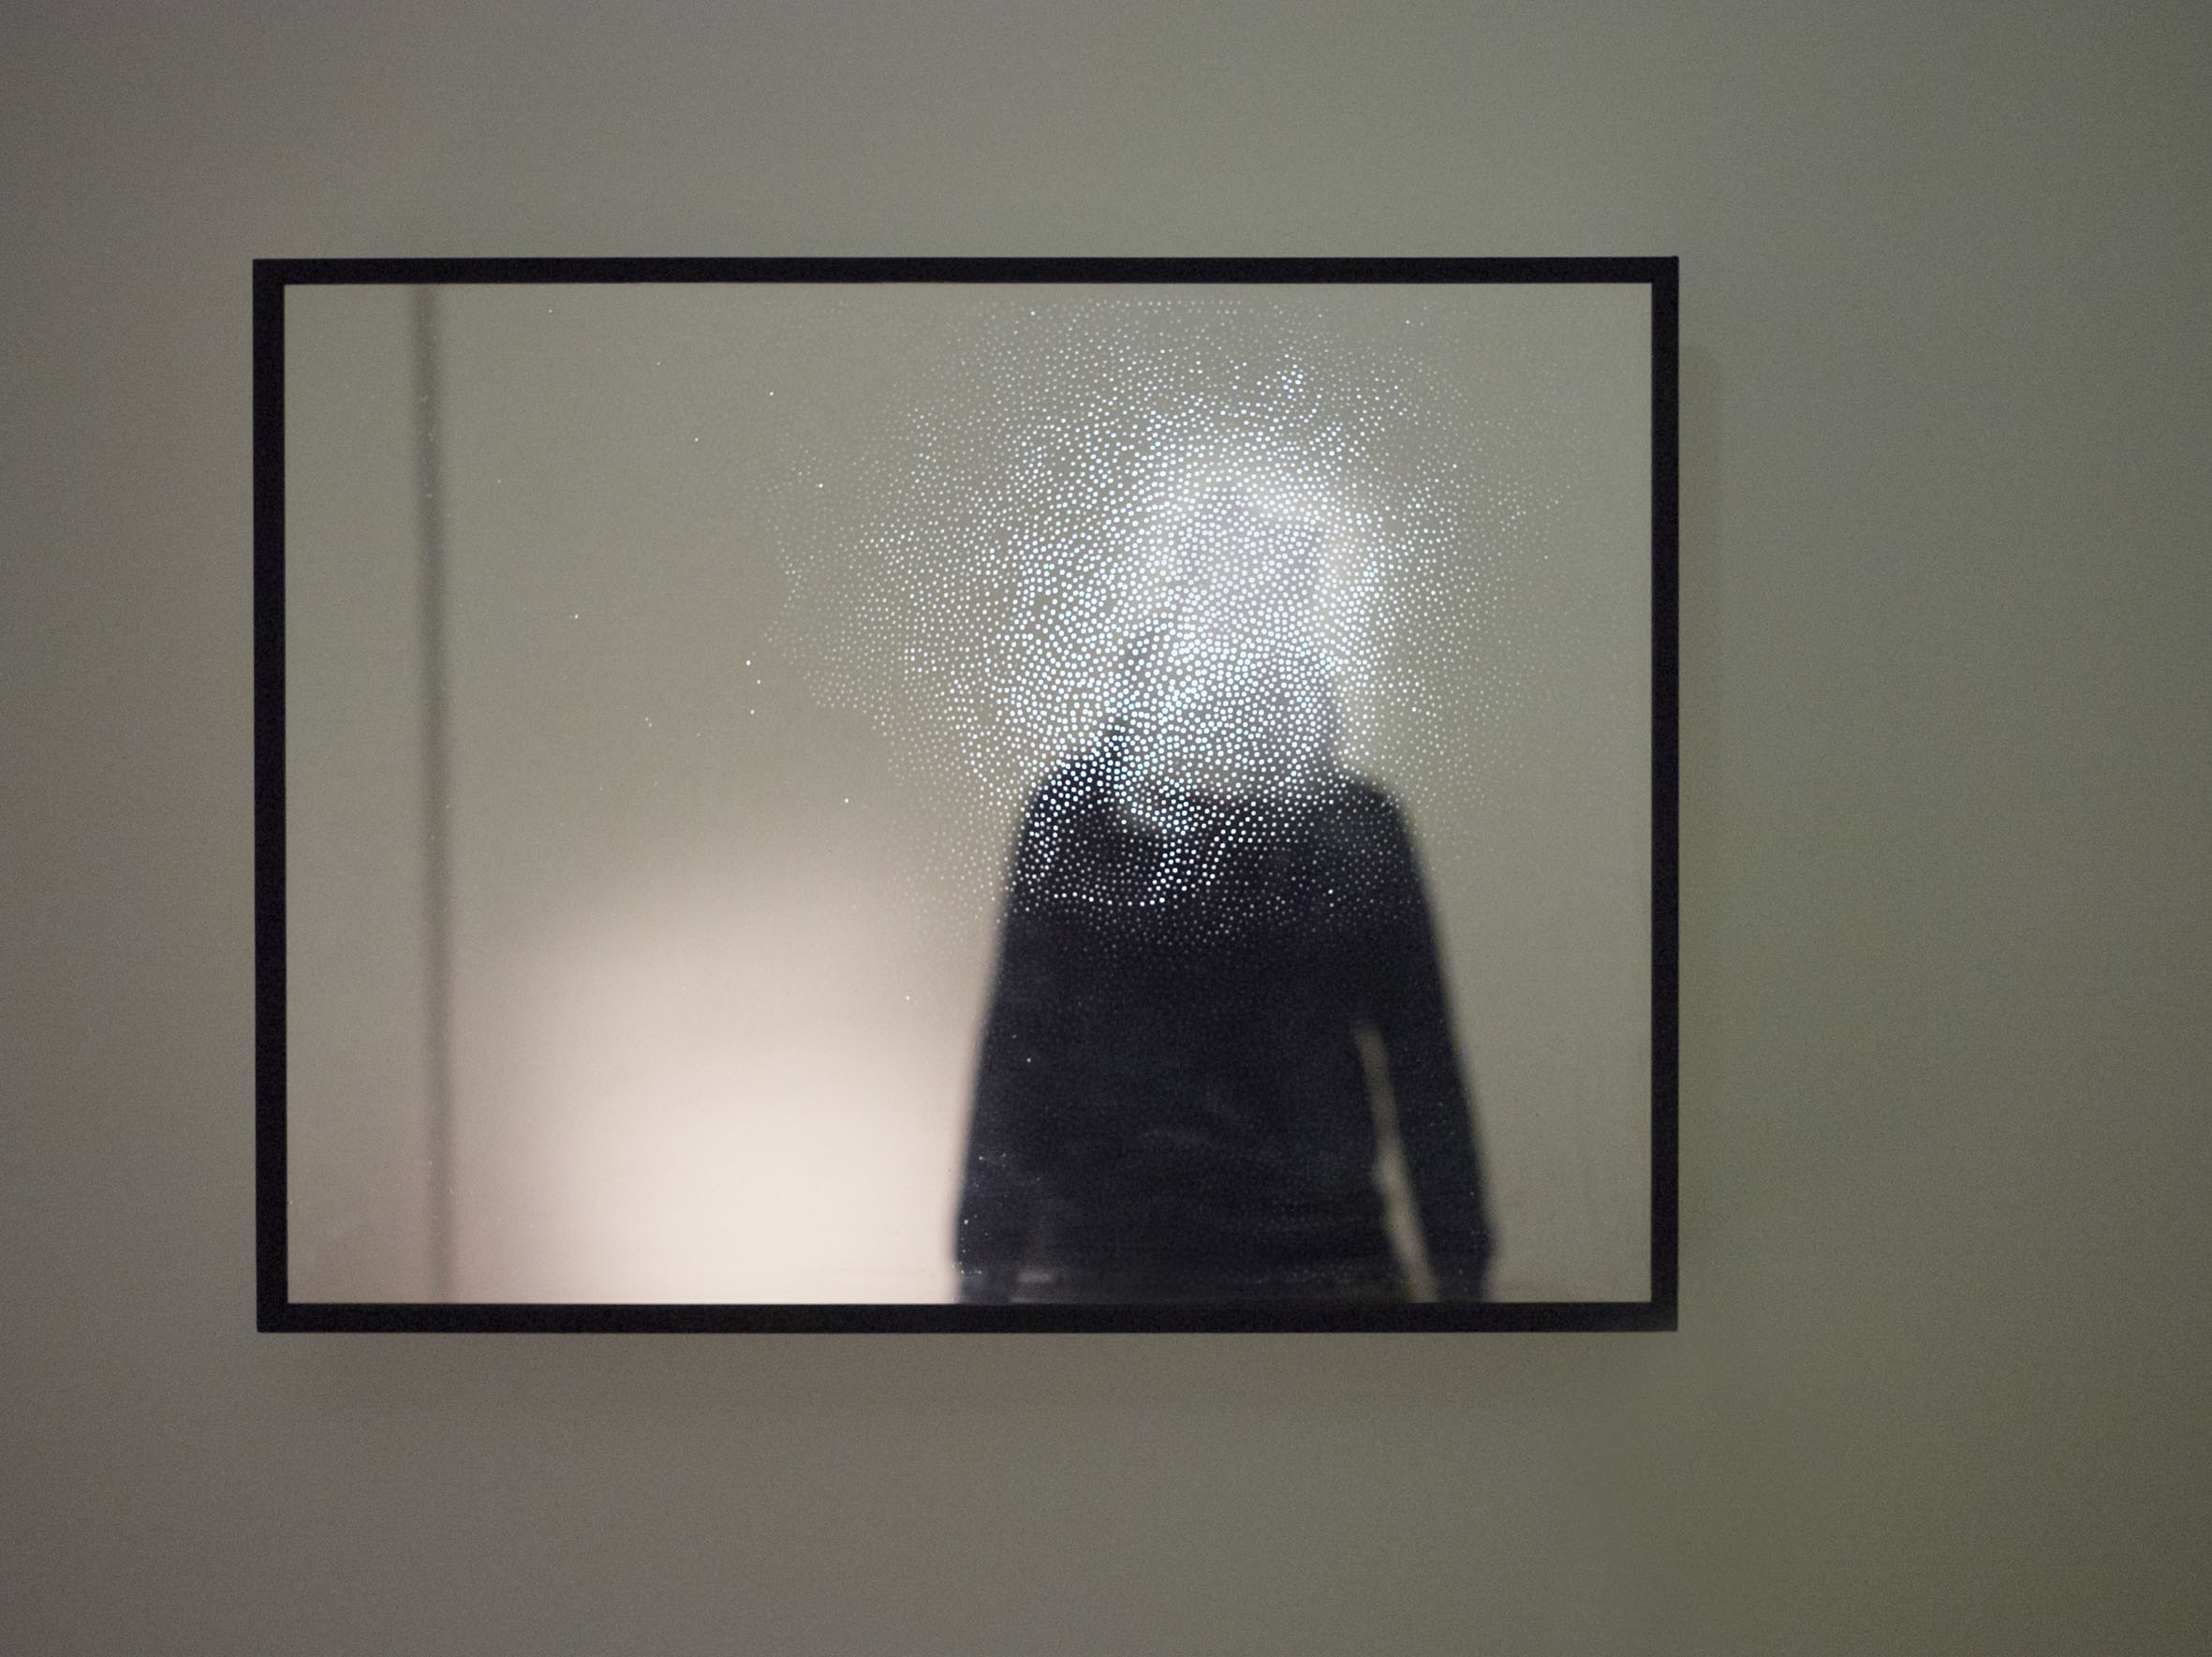 Alessandro Lupi, Antiego, Mirror, installazione interattiva, 2013, tecnica mista, cm 62x82x10. Courtesy Guidi & Schoen, Genova